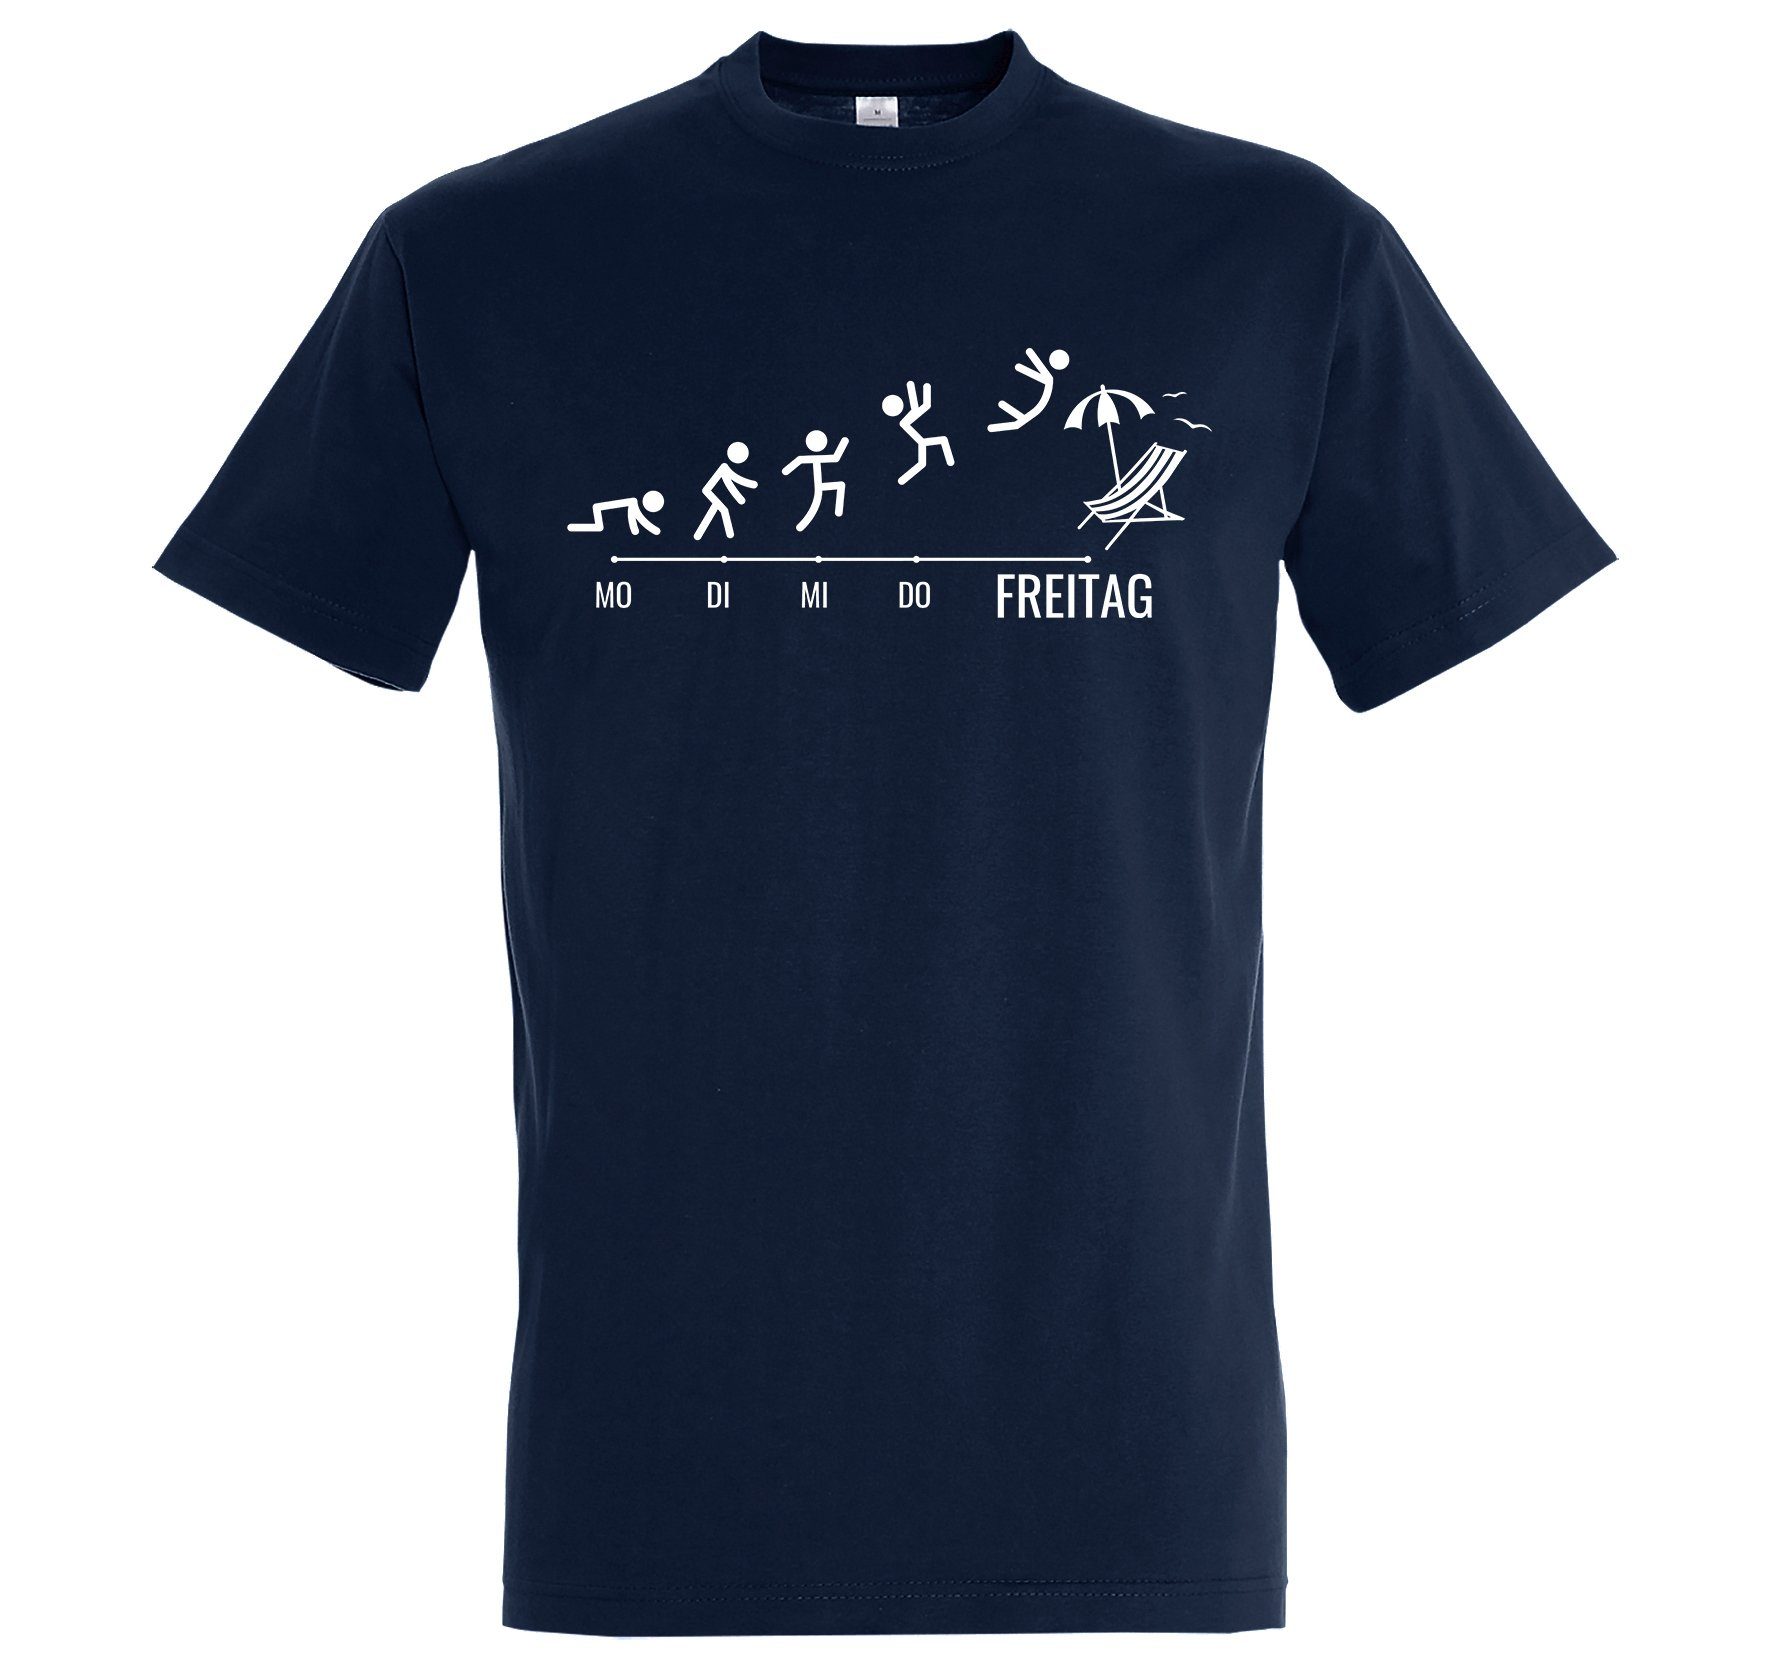 Youth Designz mit lustigem Shirt Navyblau Freitag Frontprint T-Shirt Herren Wochenende